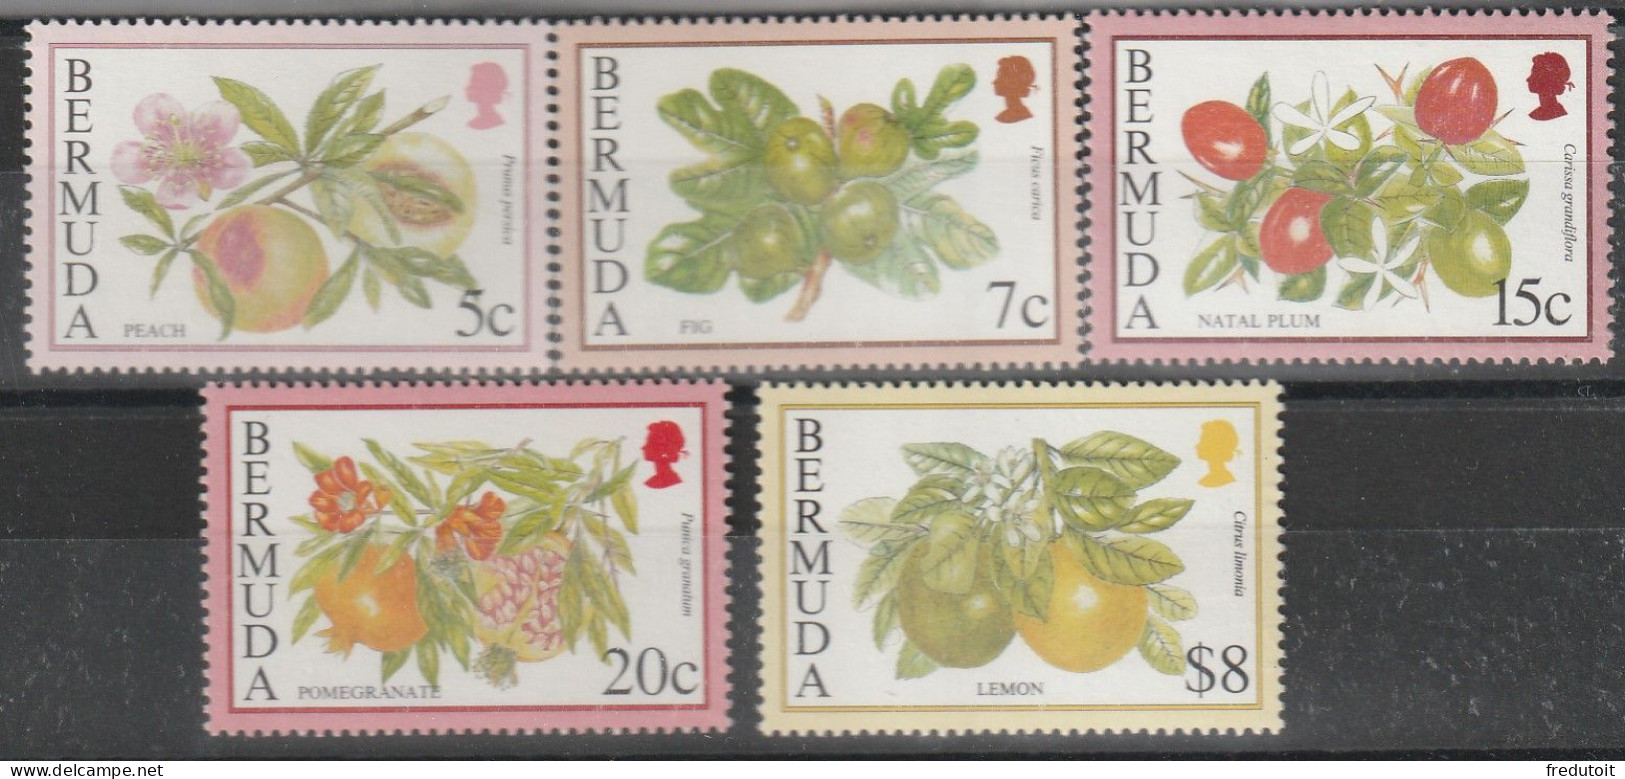 BERMUDES - N°661/5 ** (1994) Fruits - Bermuda